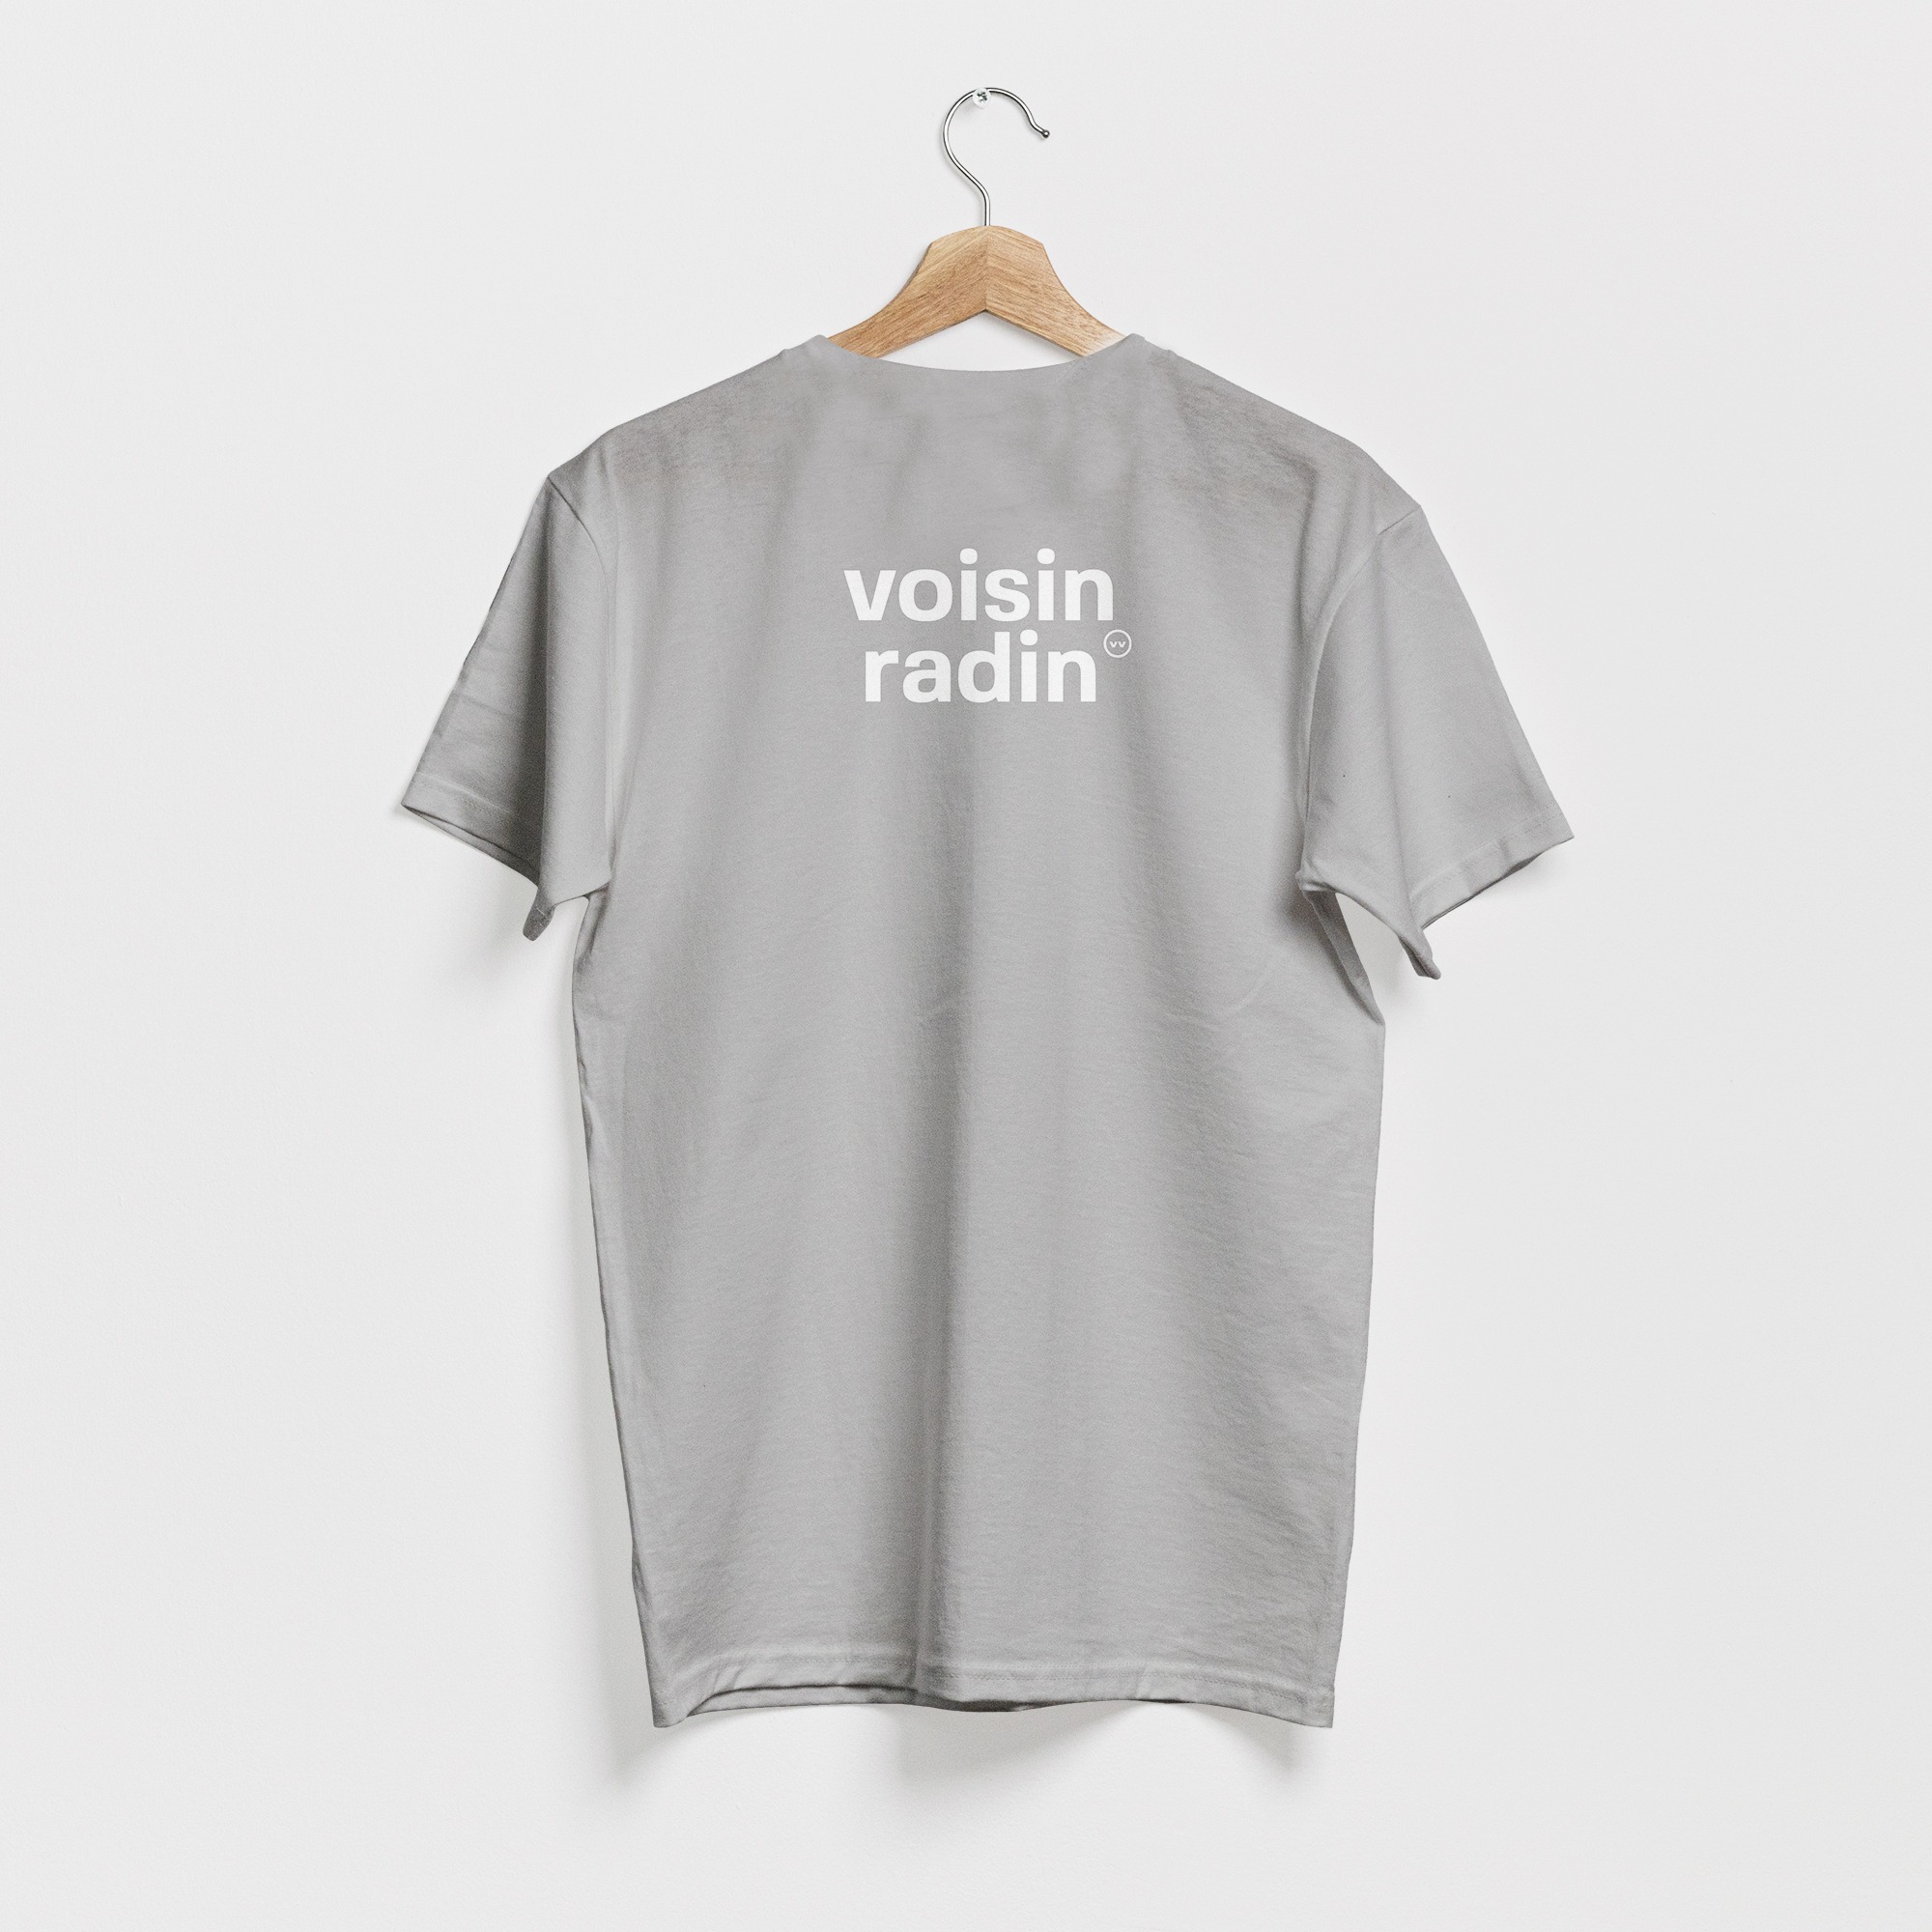 T-shirt gris, avec le texte voisin radin en blanc, de vilains-voisins imprimerie et studio de design graphique à Rethel, dans les Ardennes.